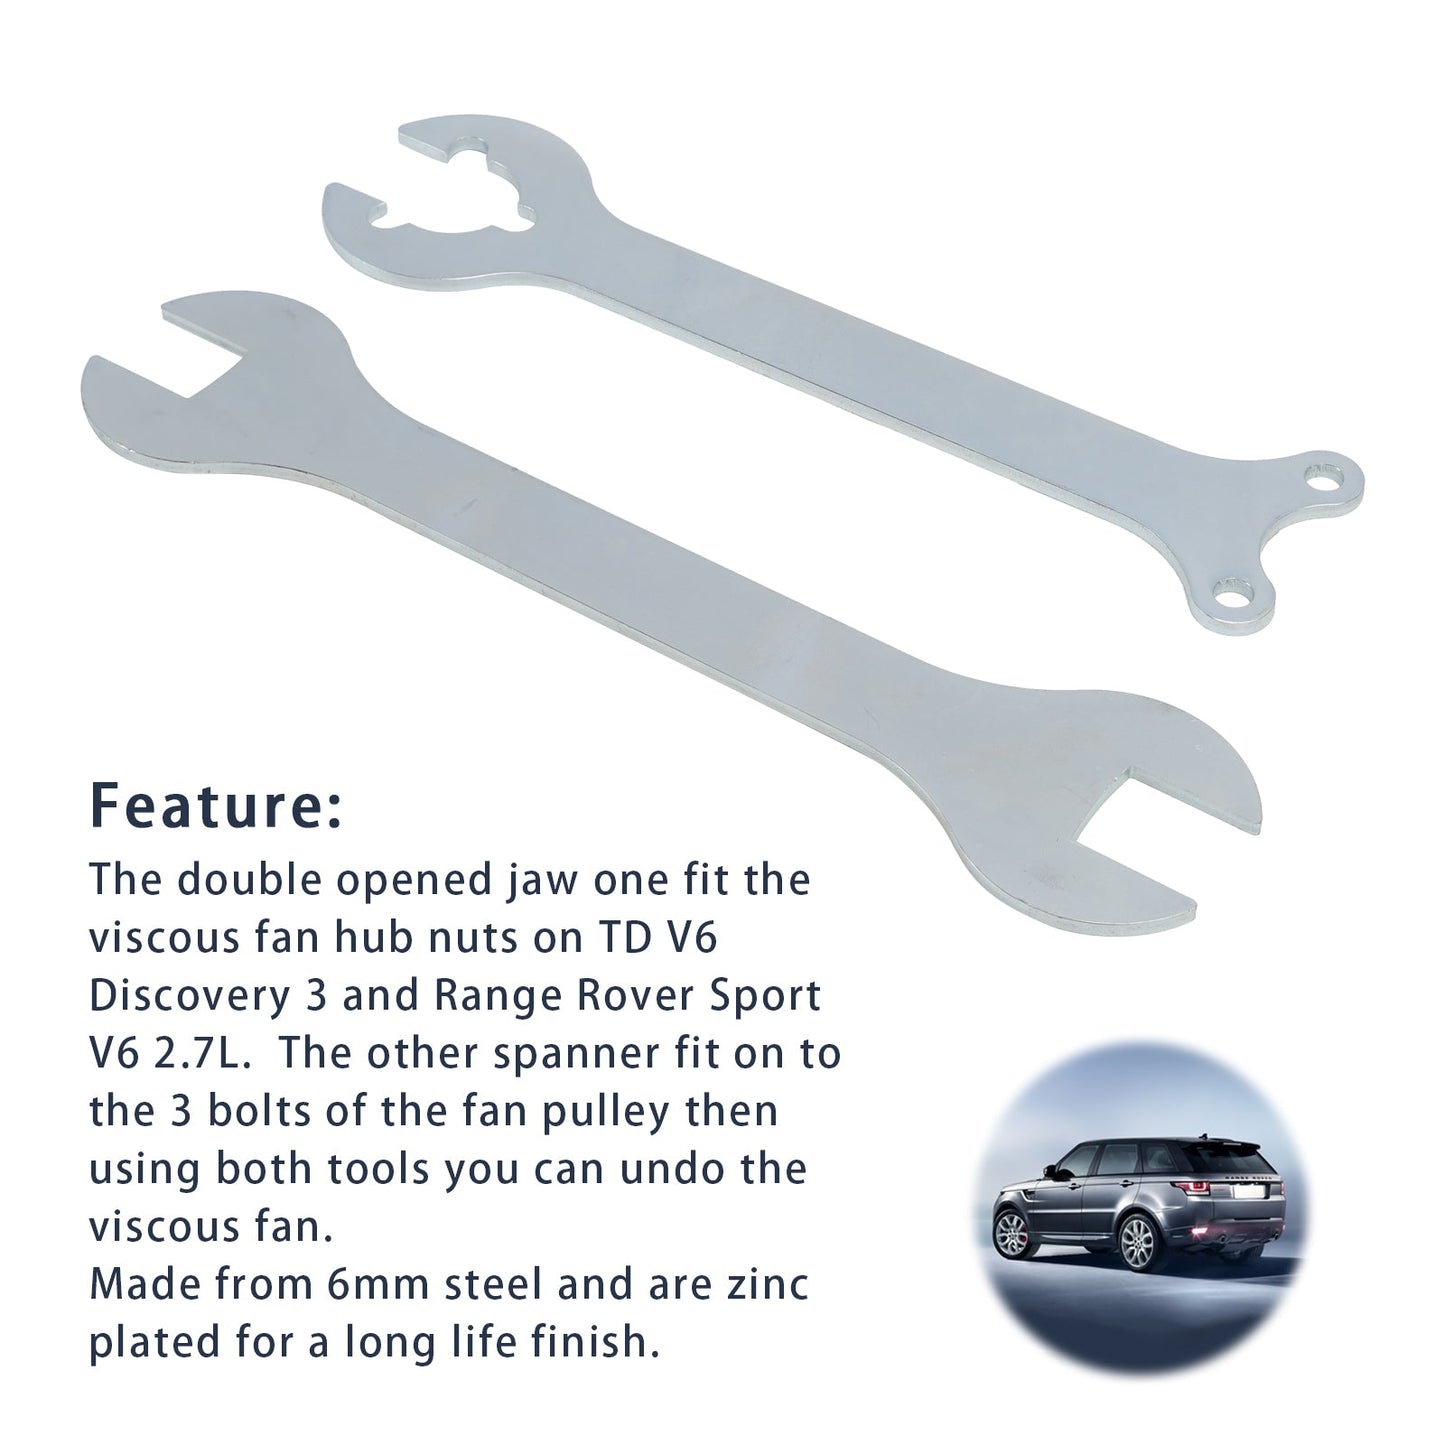 Viskose-Lüfter-Werkzeug-Schlüssel, passend für Land Rover Range Rover Sport und TD V6 Discovery 3